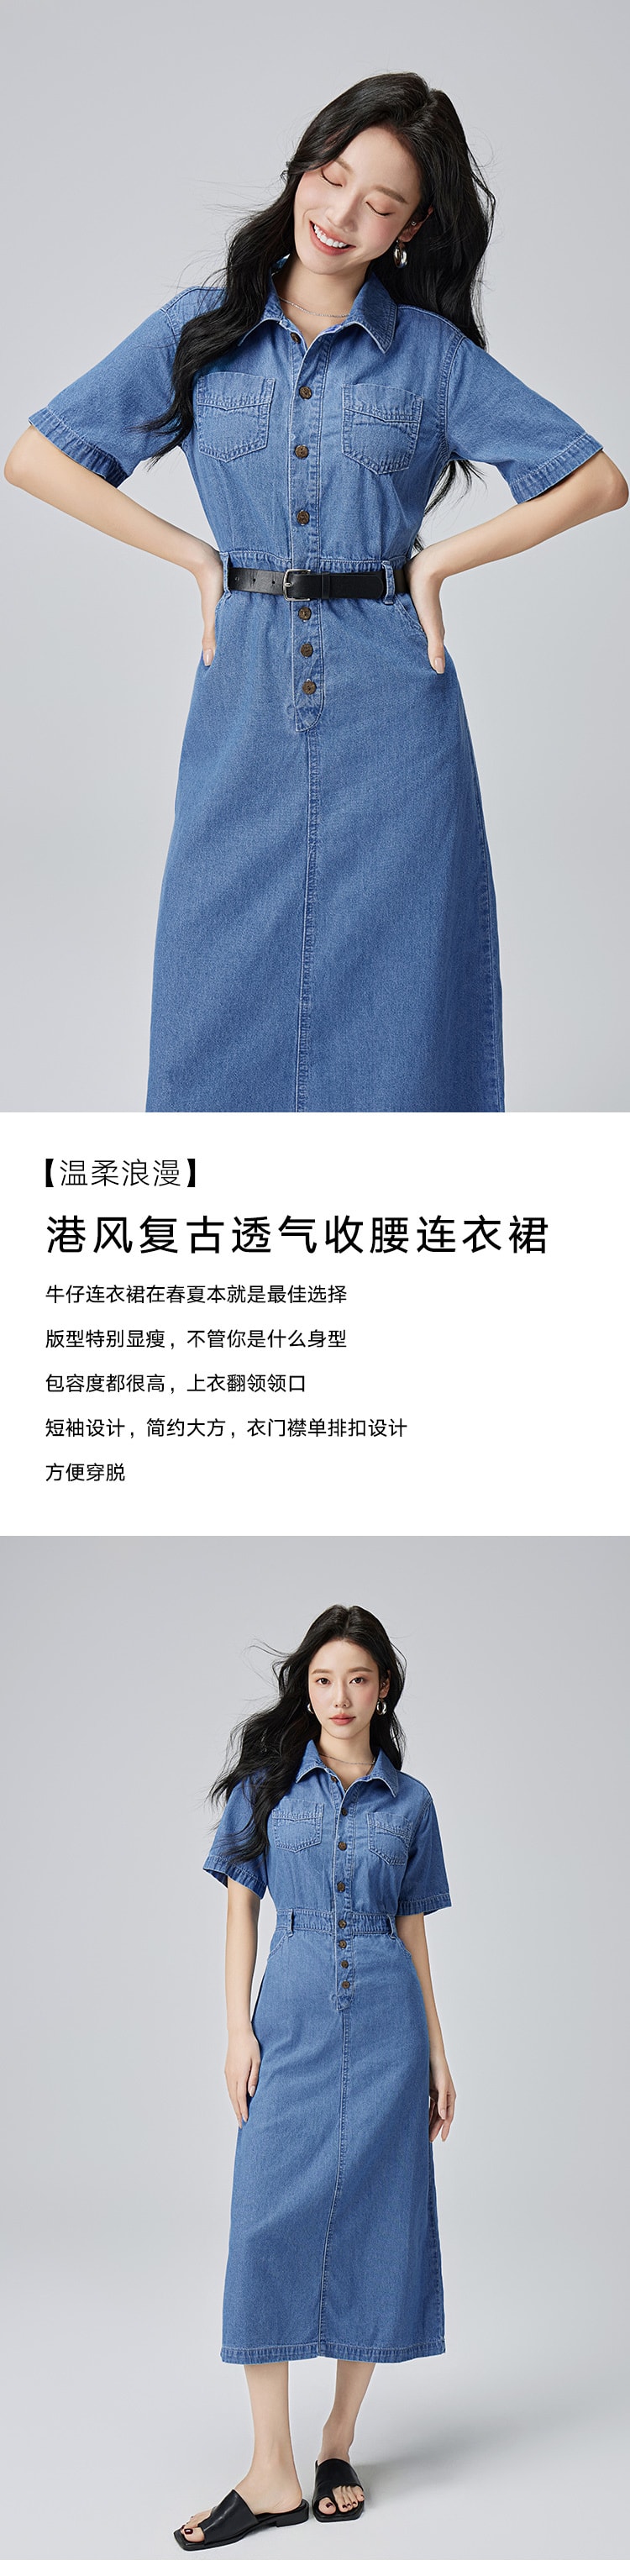 【中国直邮】HSPM 新款港风复古透气收腰连衣裙 蓝色 M